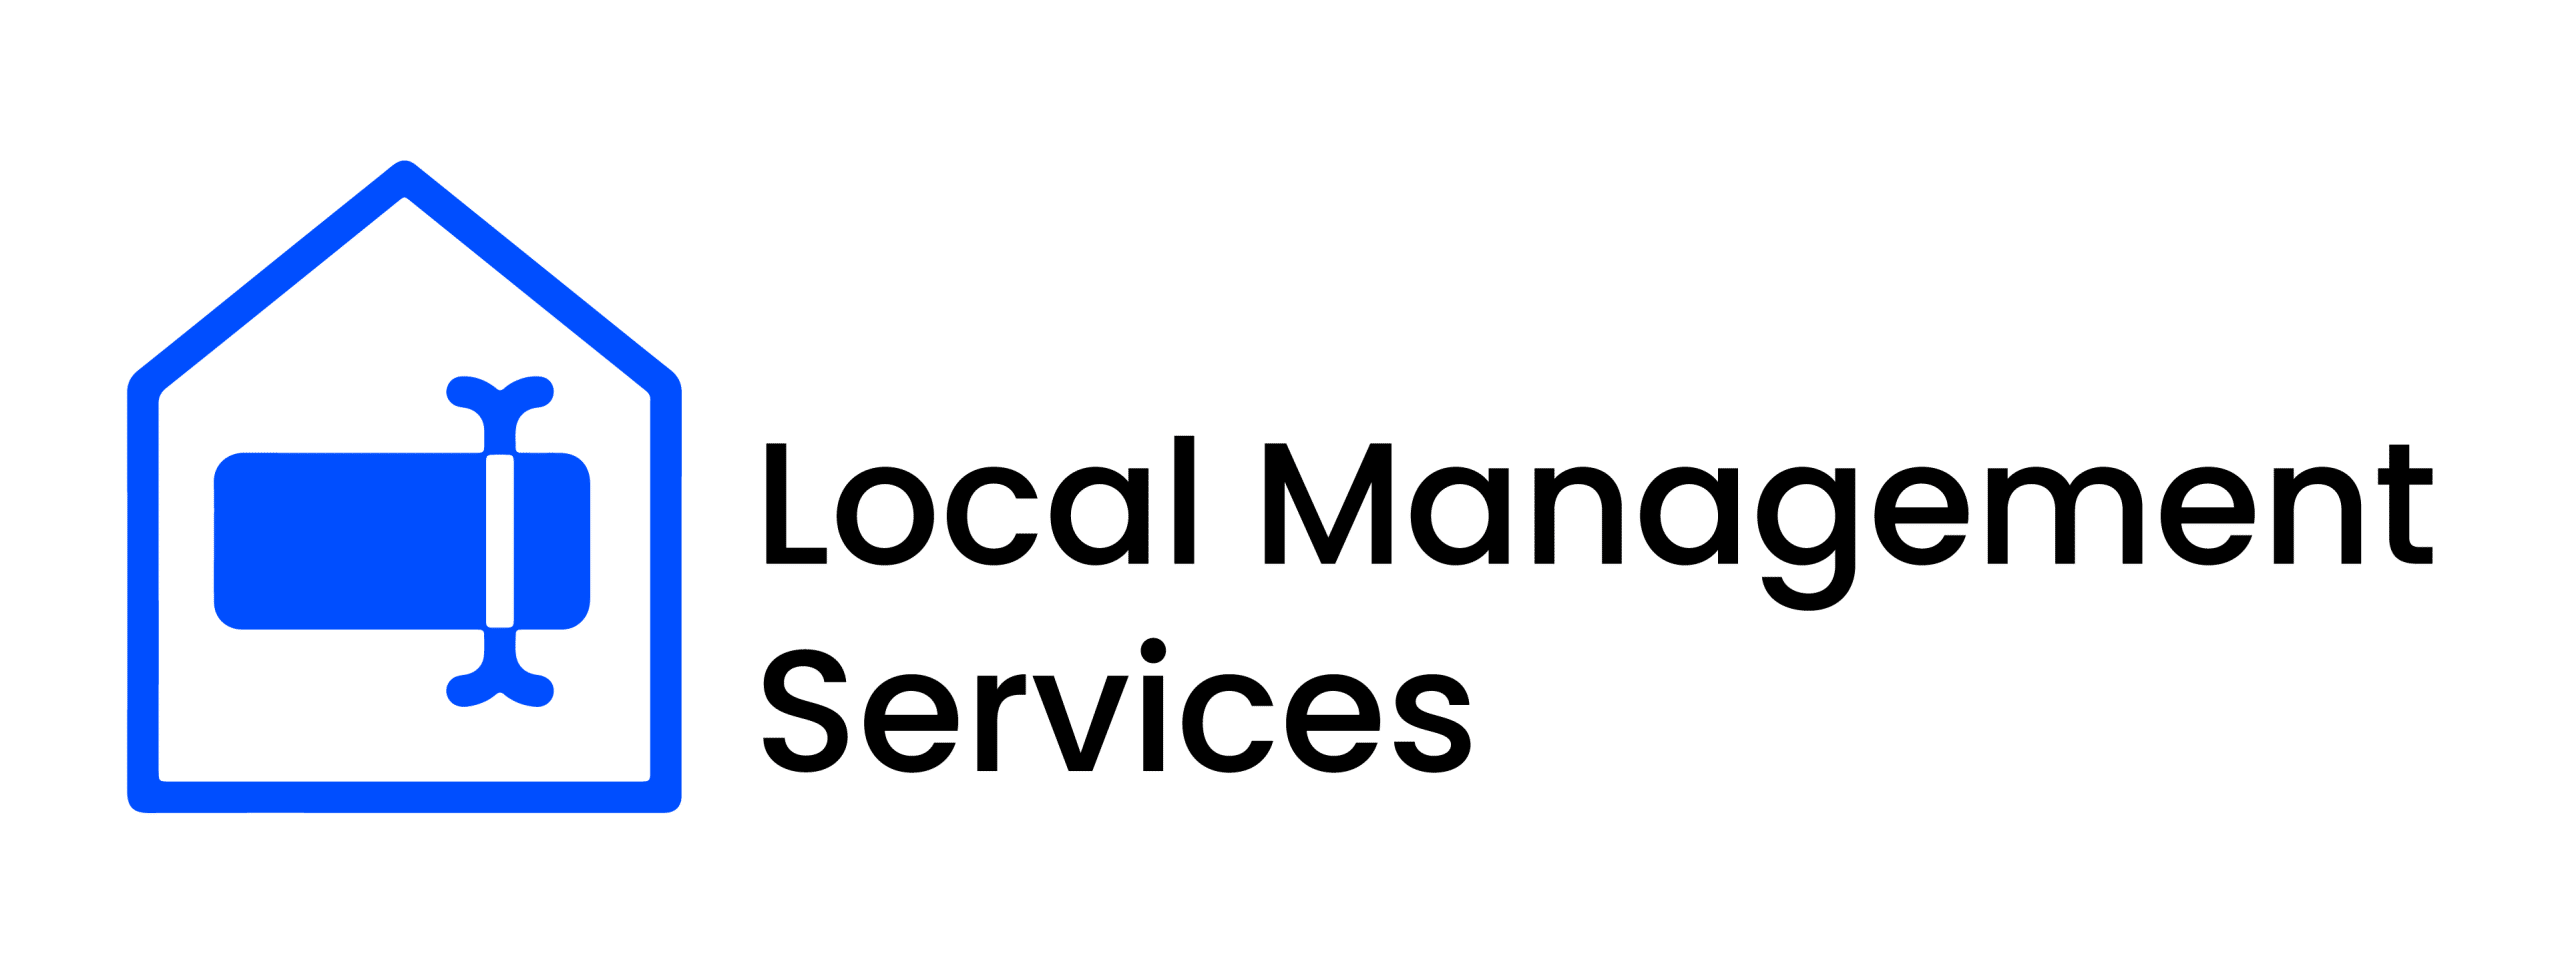 1 Local Management Services Logo Blue Black Transparent